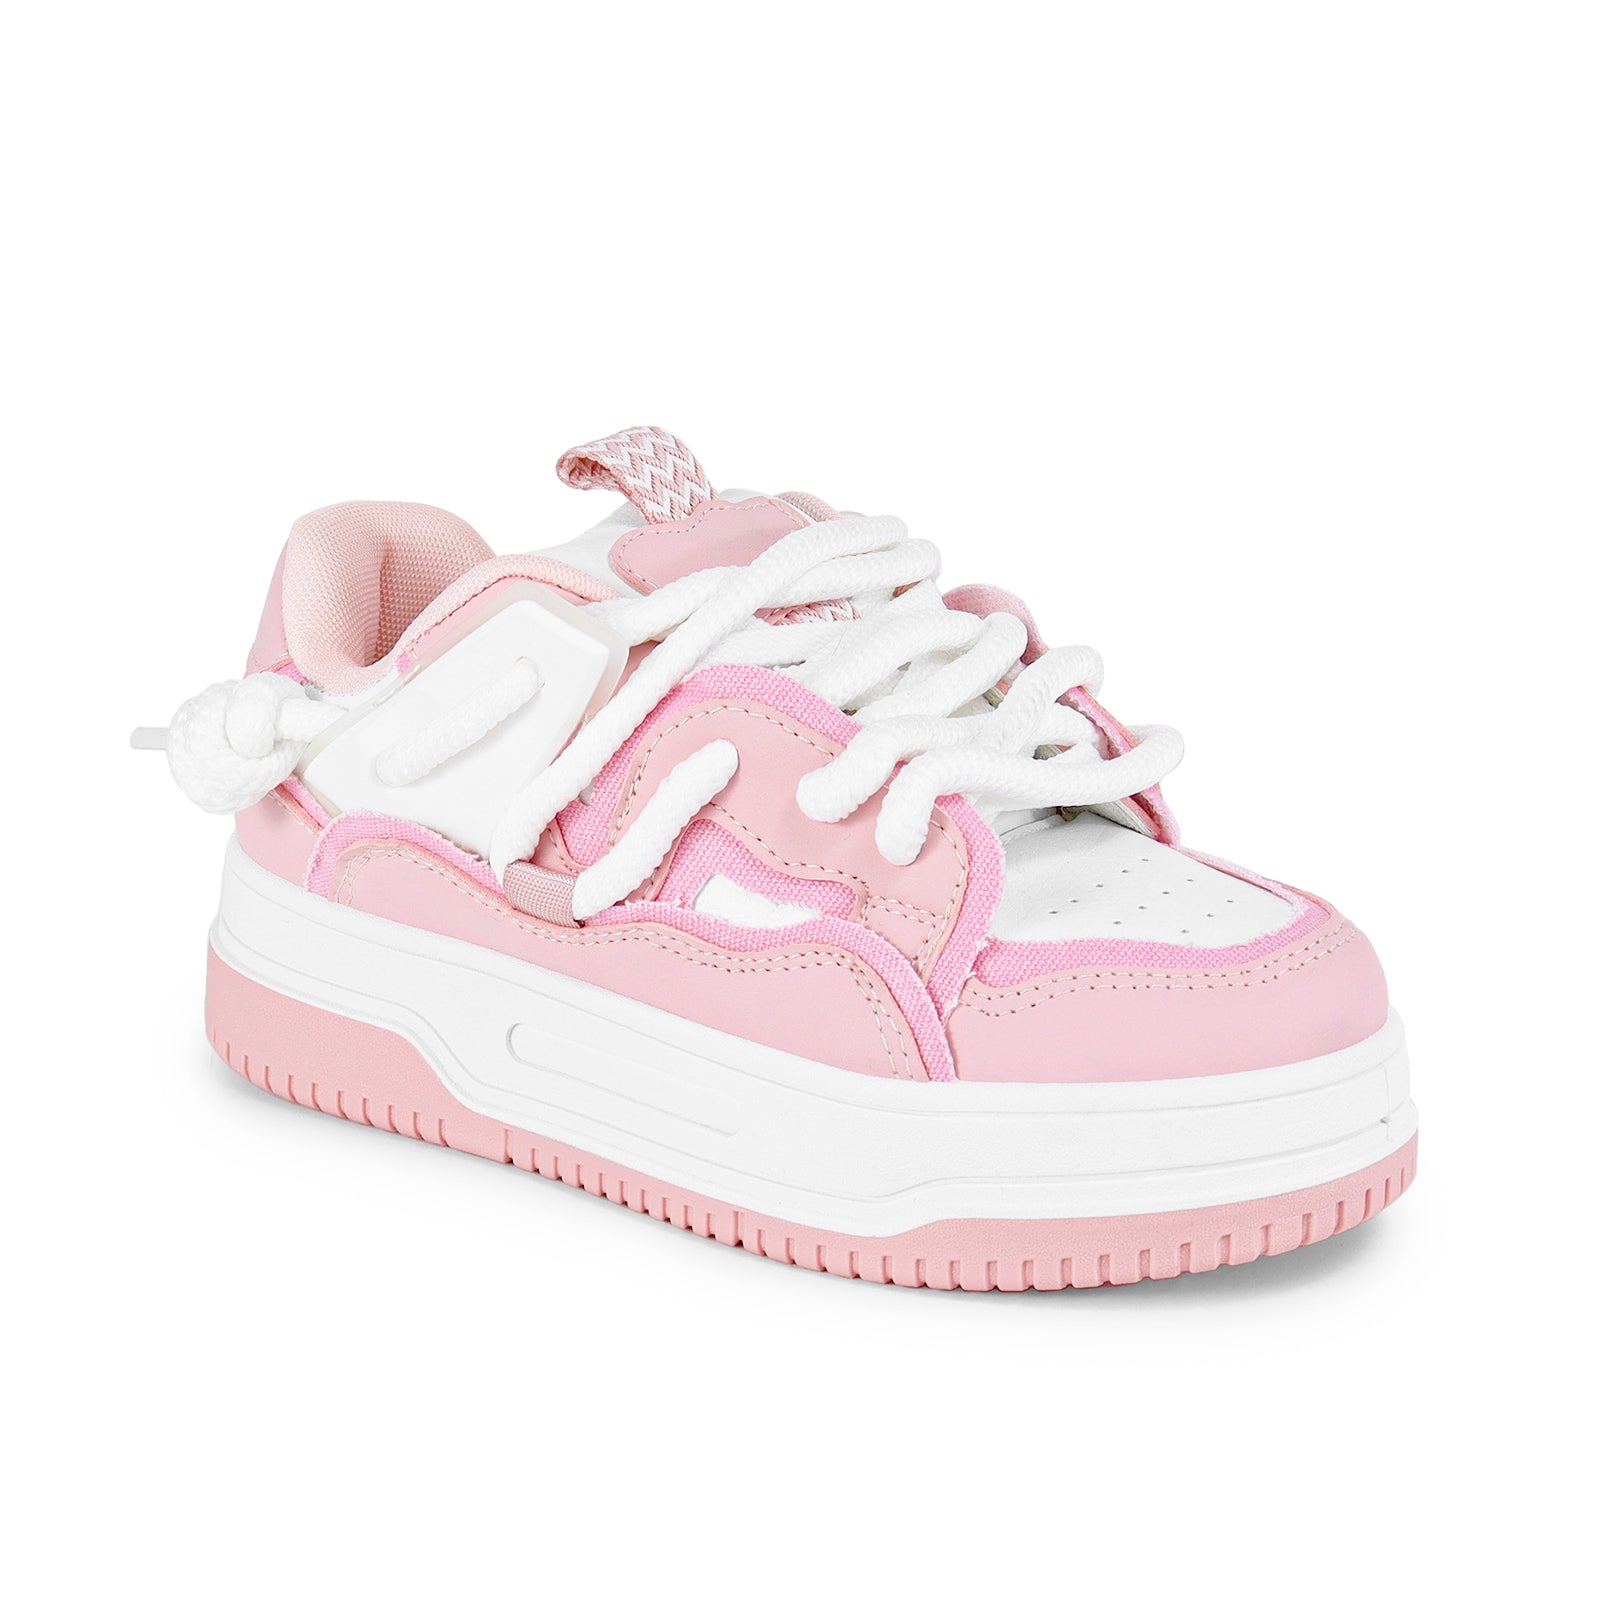 SURREAL Pink - ShoeNami